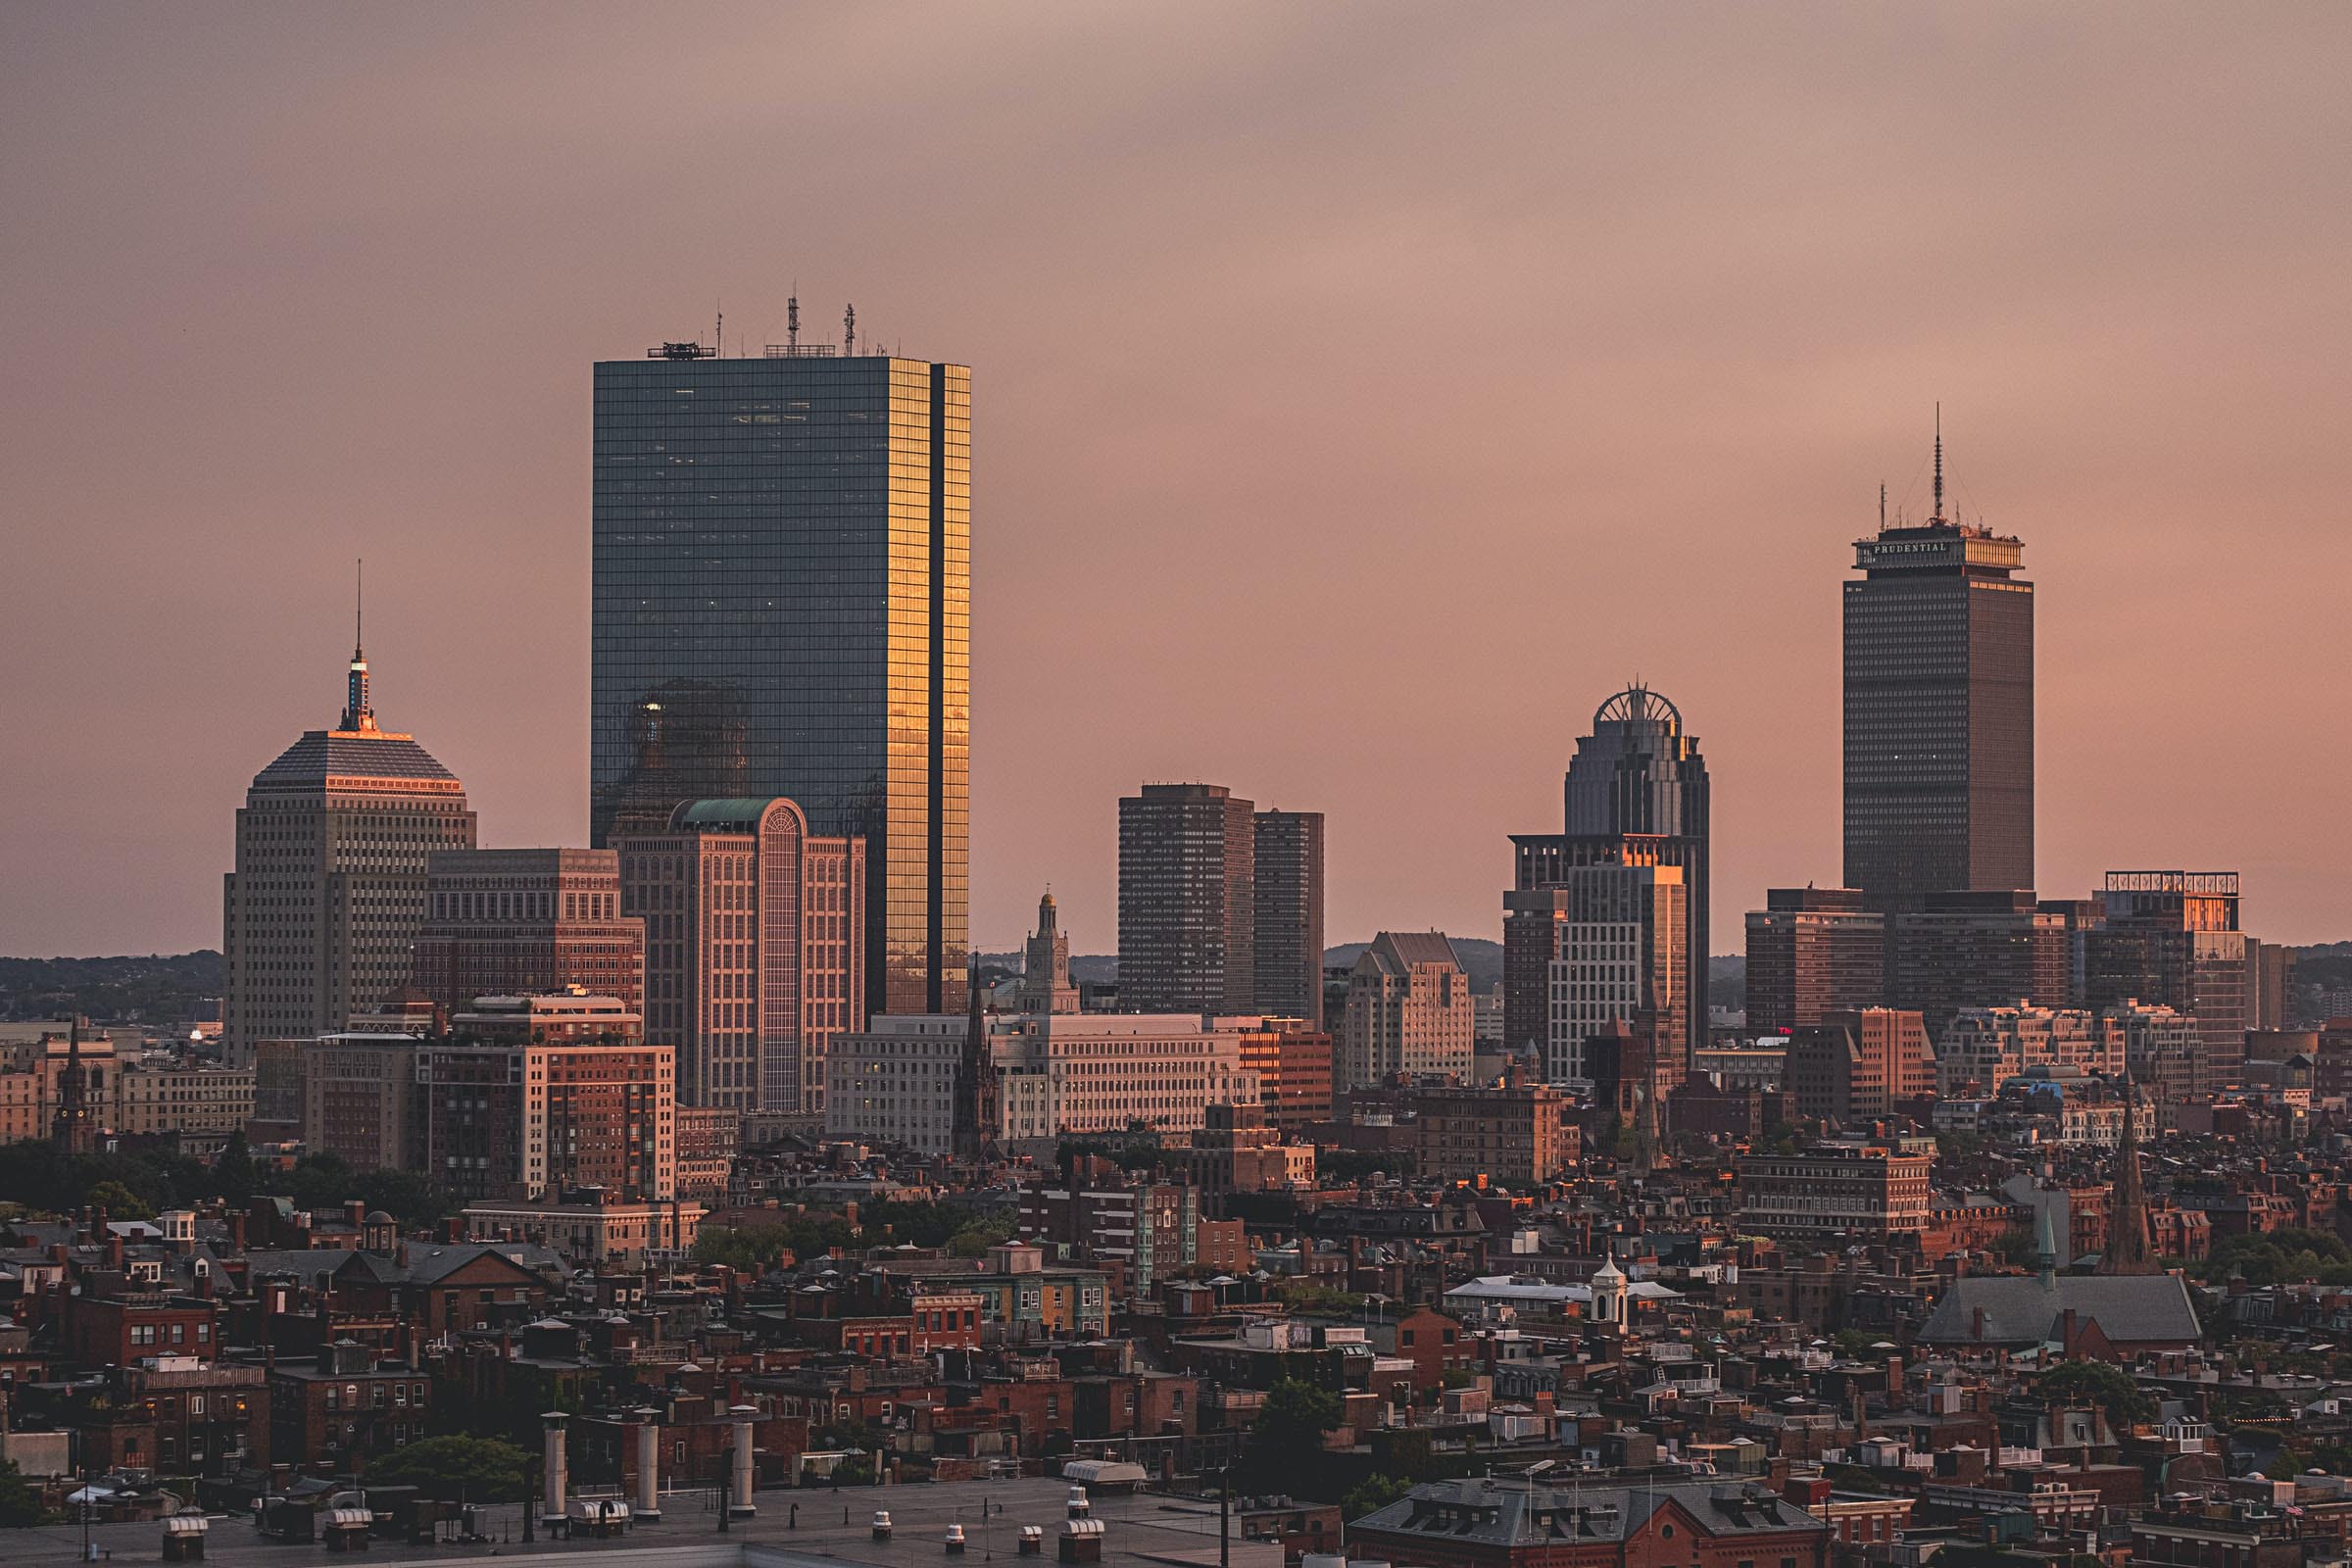 The Boston Skyline at Sundown